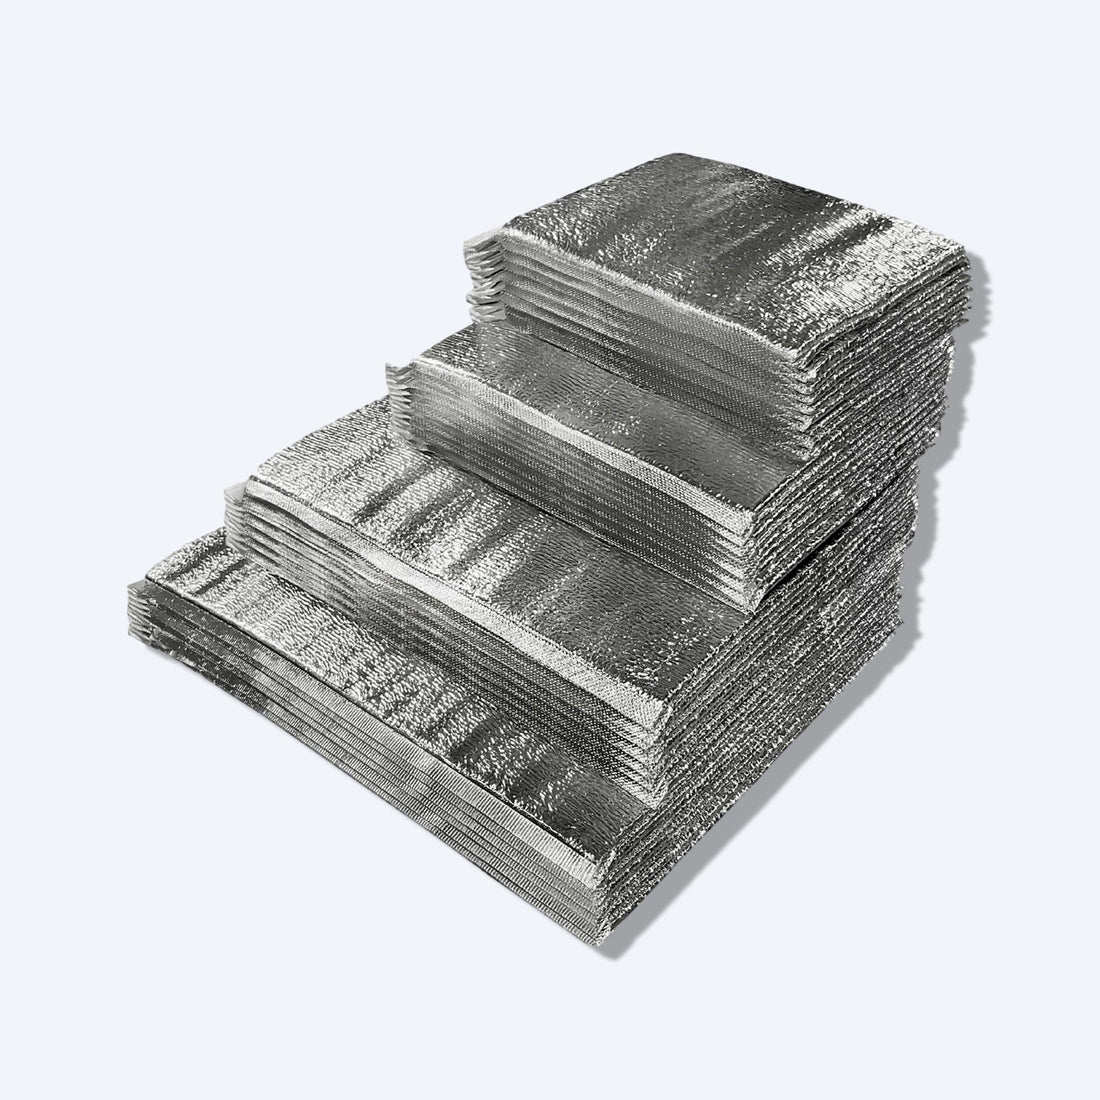 疊放的銀色鋁箔外賣保溫袋，設計用於保冷效果優良，提升外賣食品保鮮度。